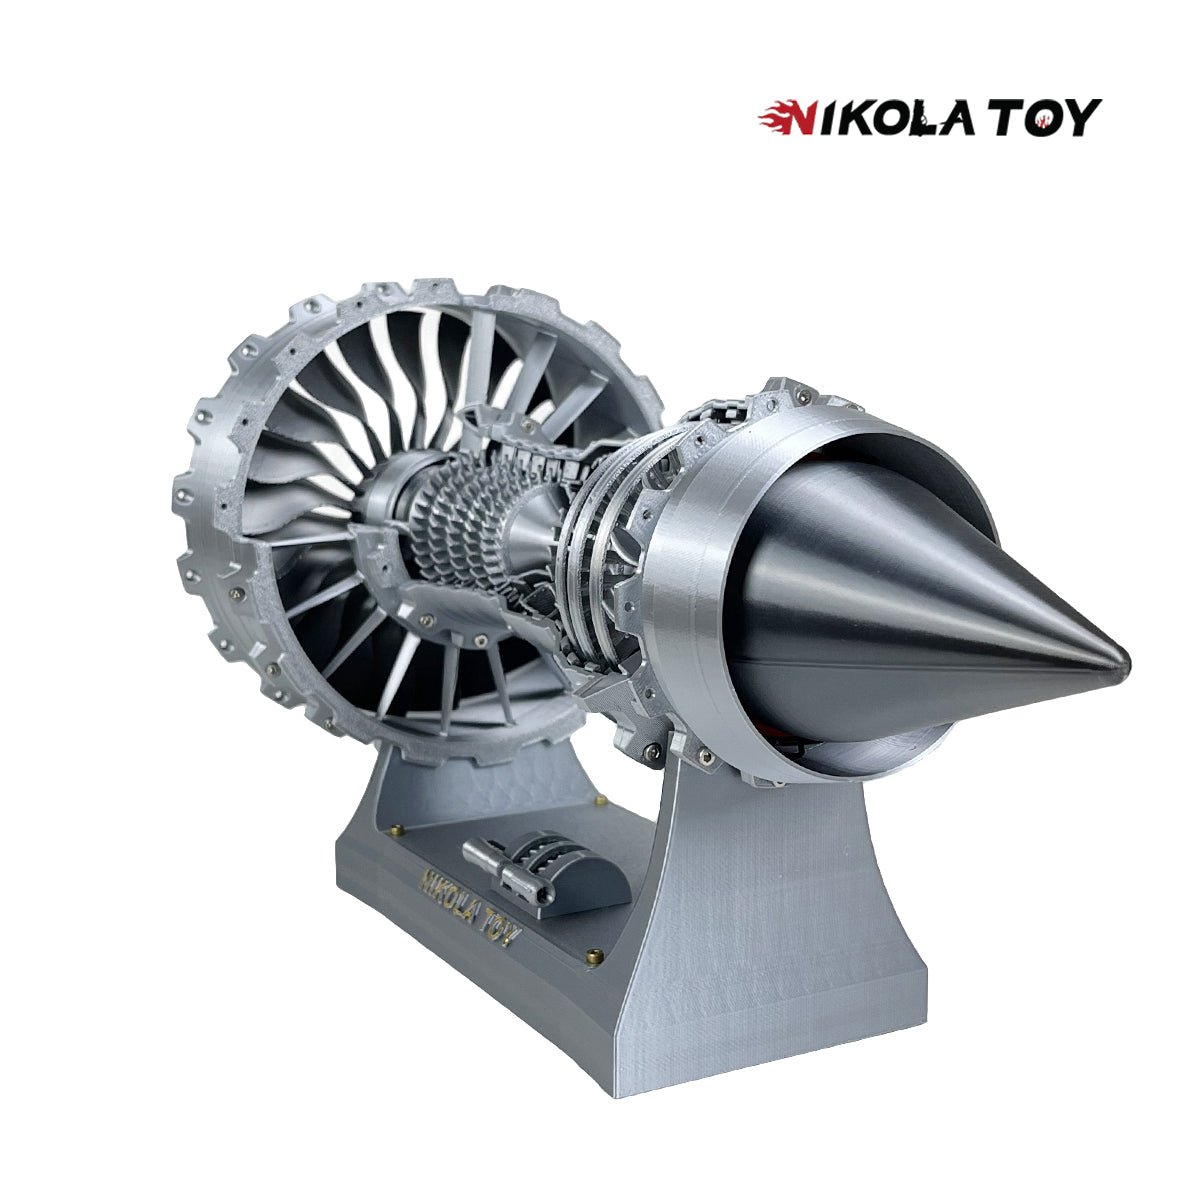 Final version of Rolls Royce Trent 900 turbofan engine model (40cm/15.7in)